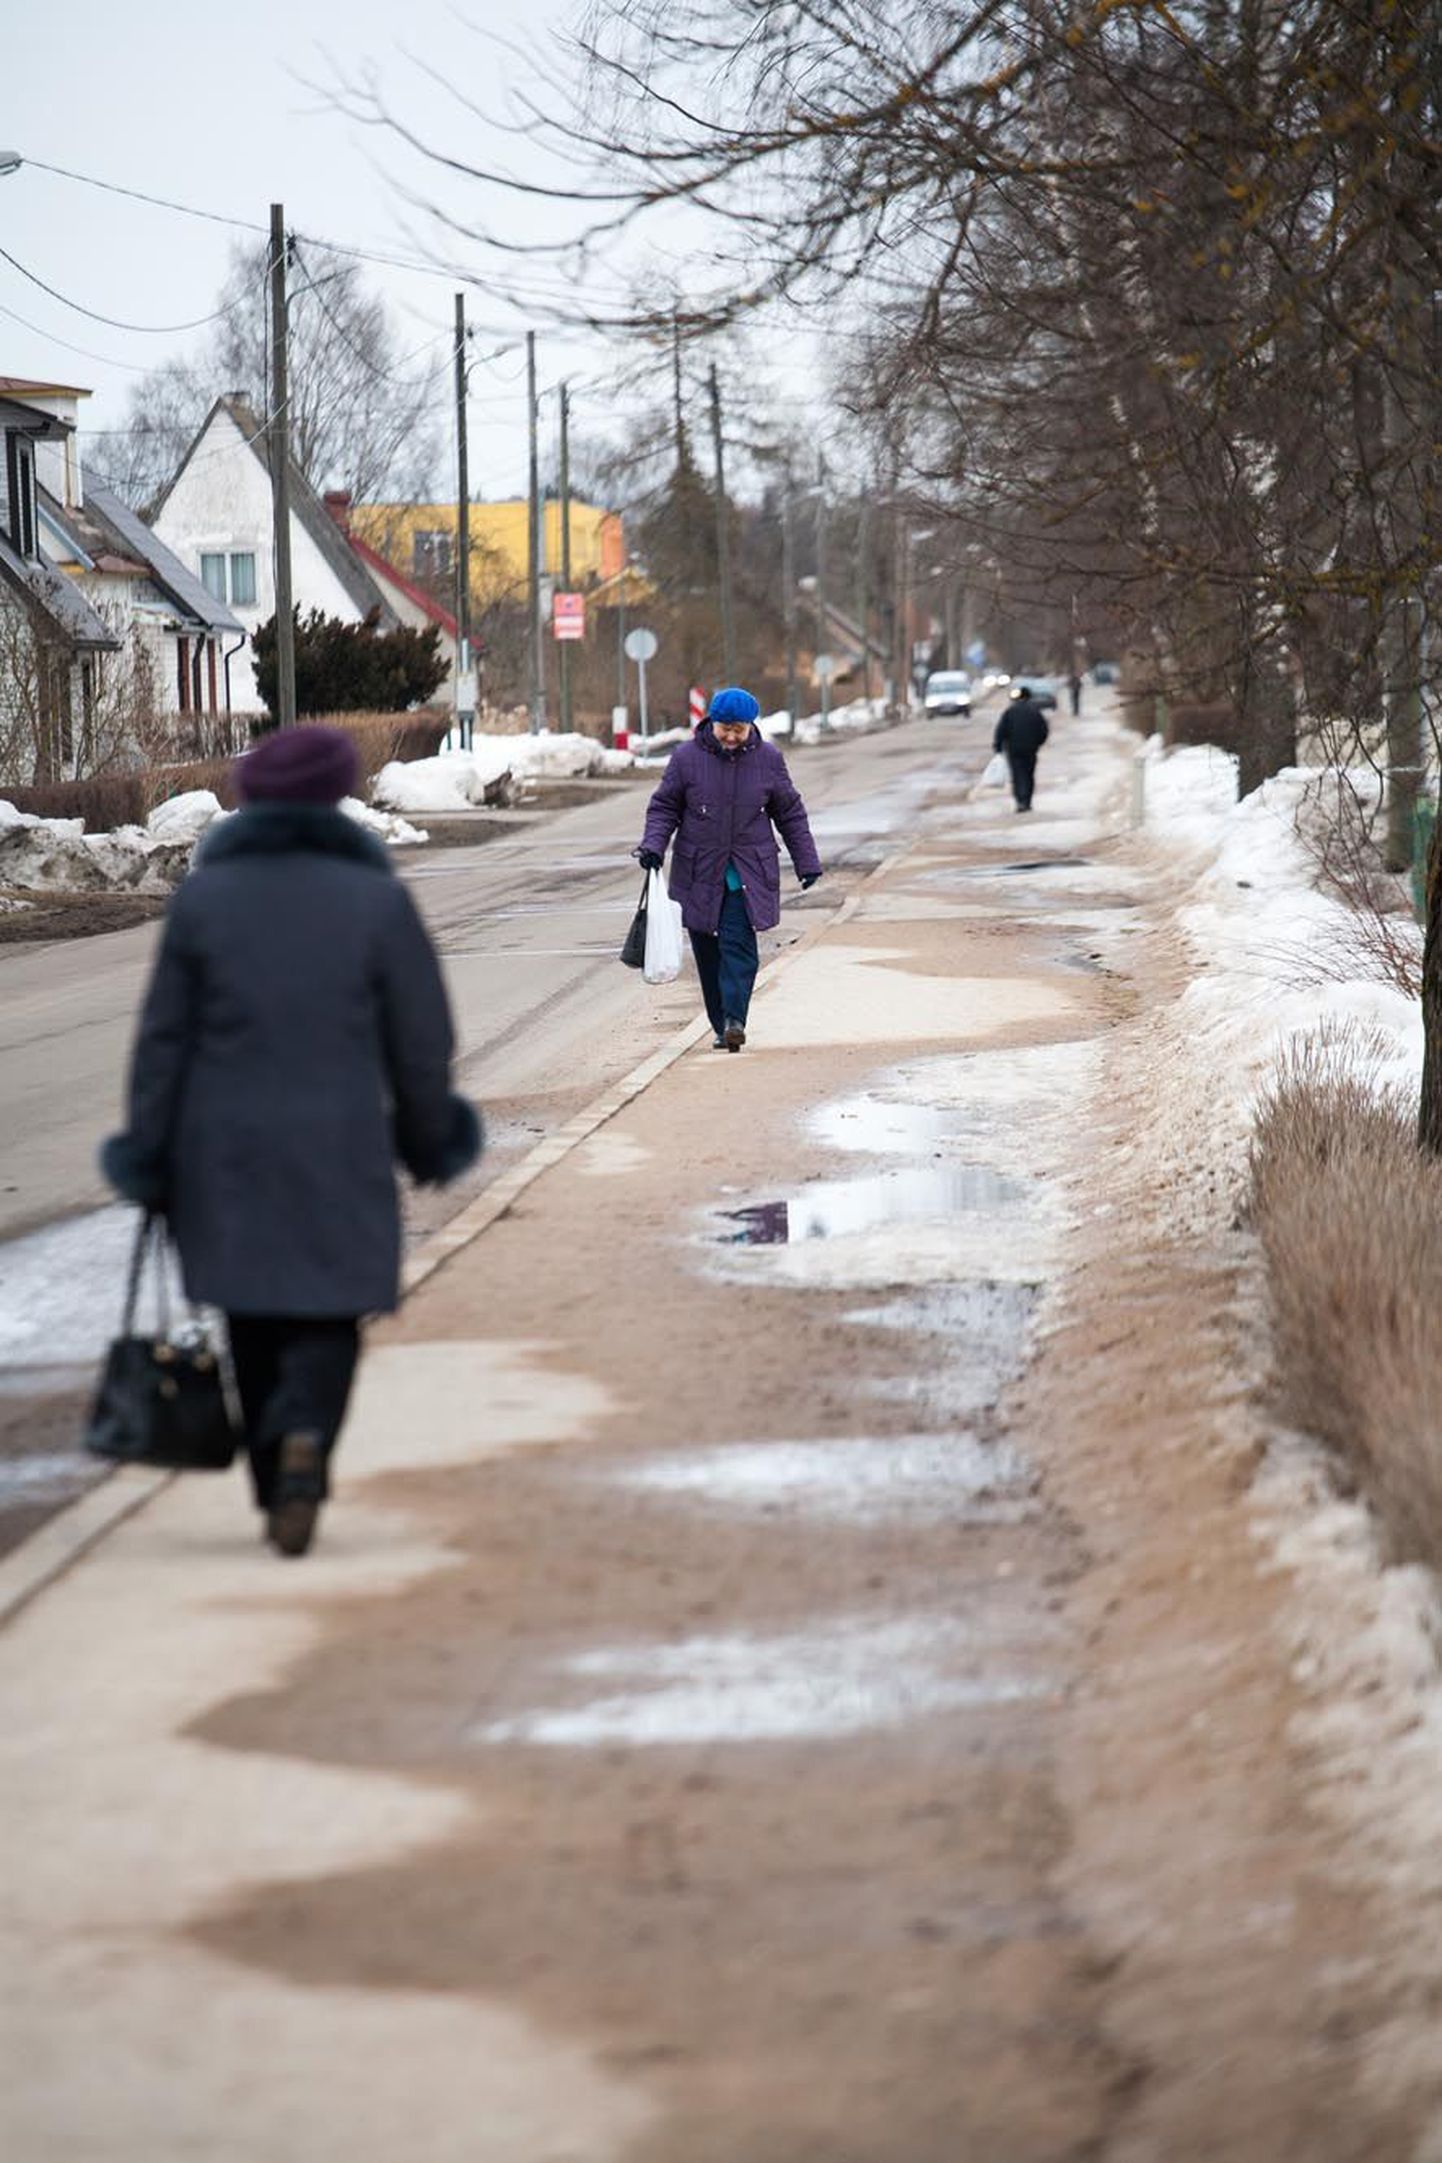 Laia tänava kõnniteel lükatakse lund ja tehakse libedustõrjet linna rahastusel.